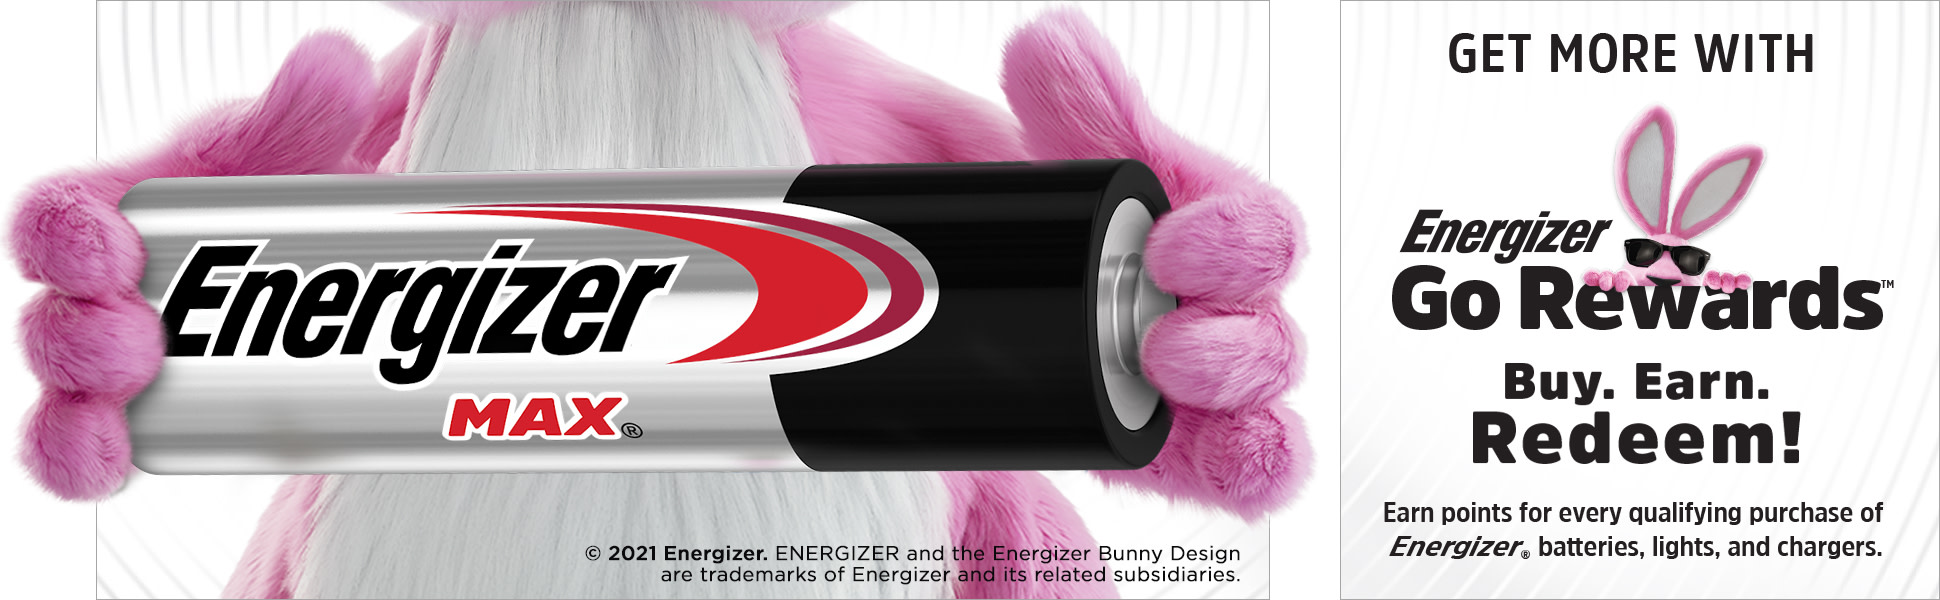 Energizer Max Premium C Baterías, pilas alcalinas C (4 unidades) E93BP-4